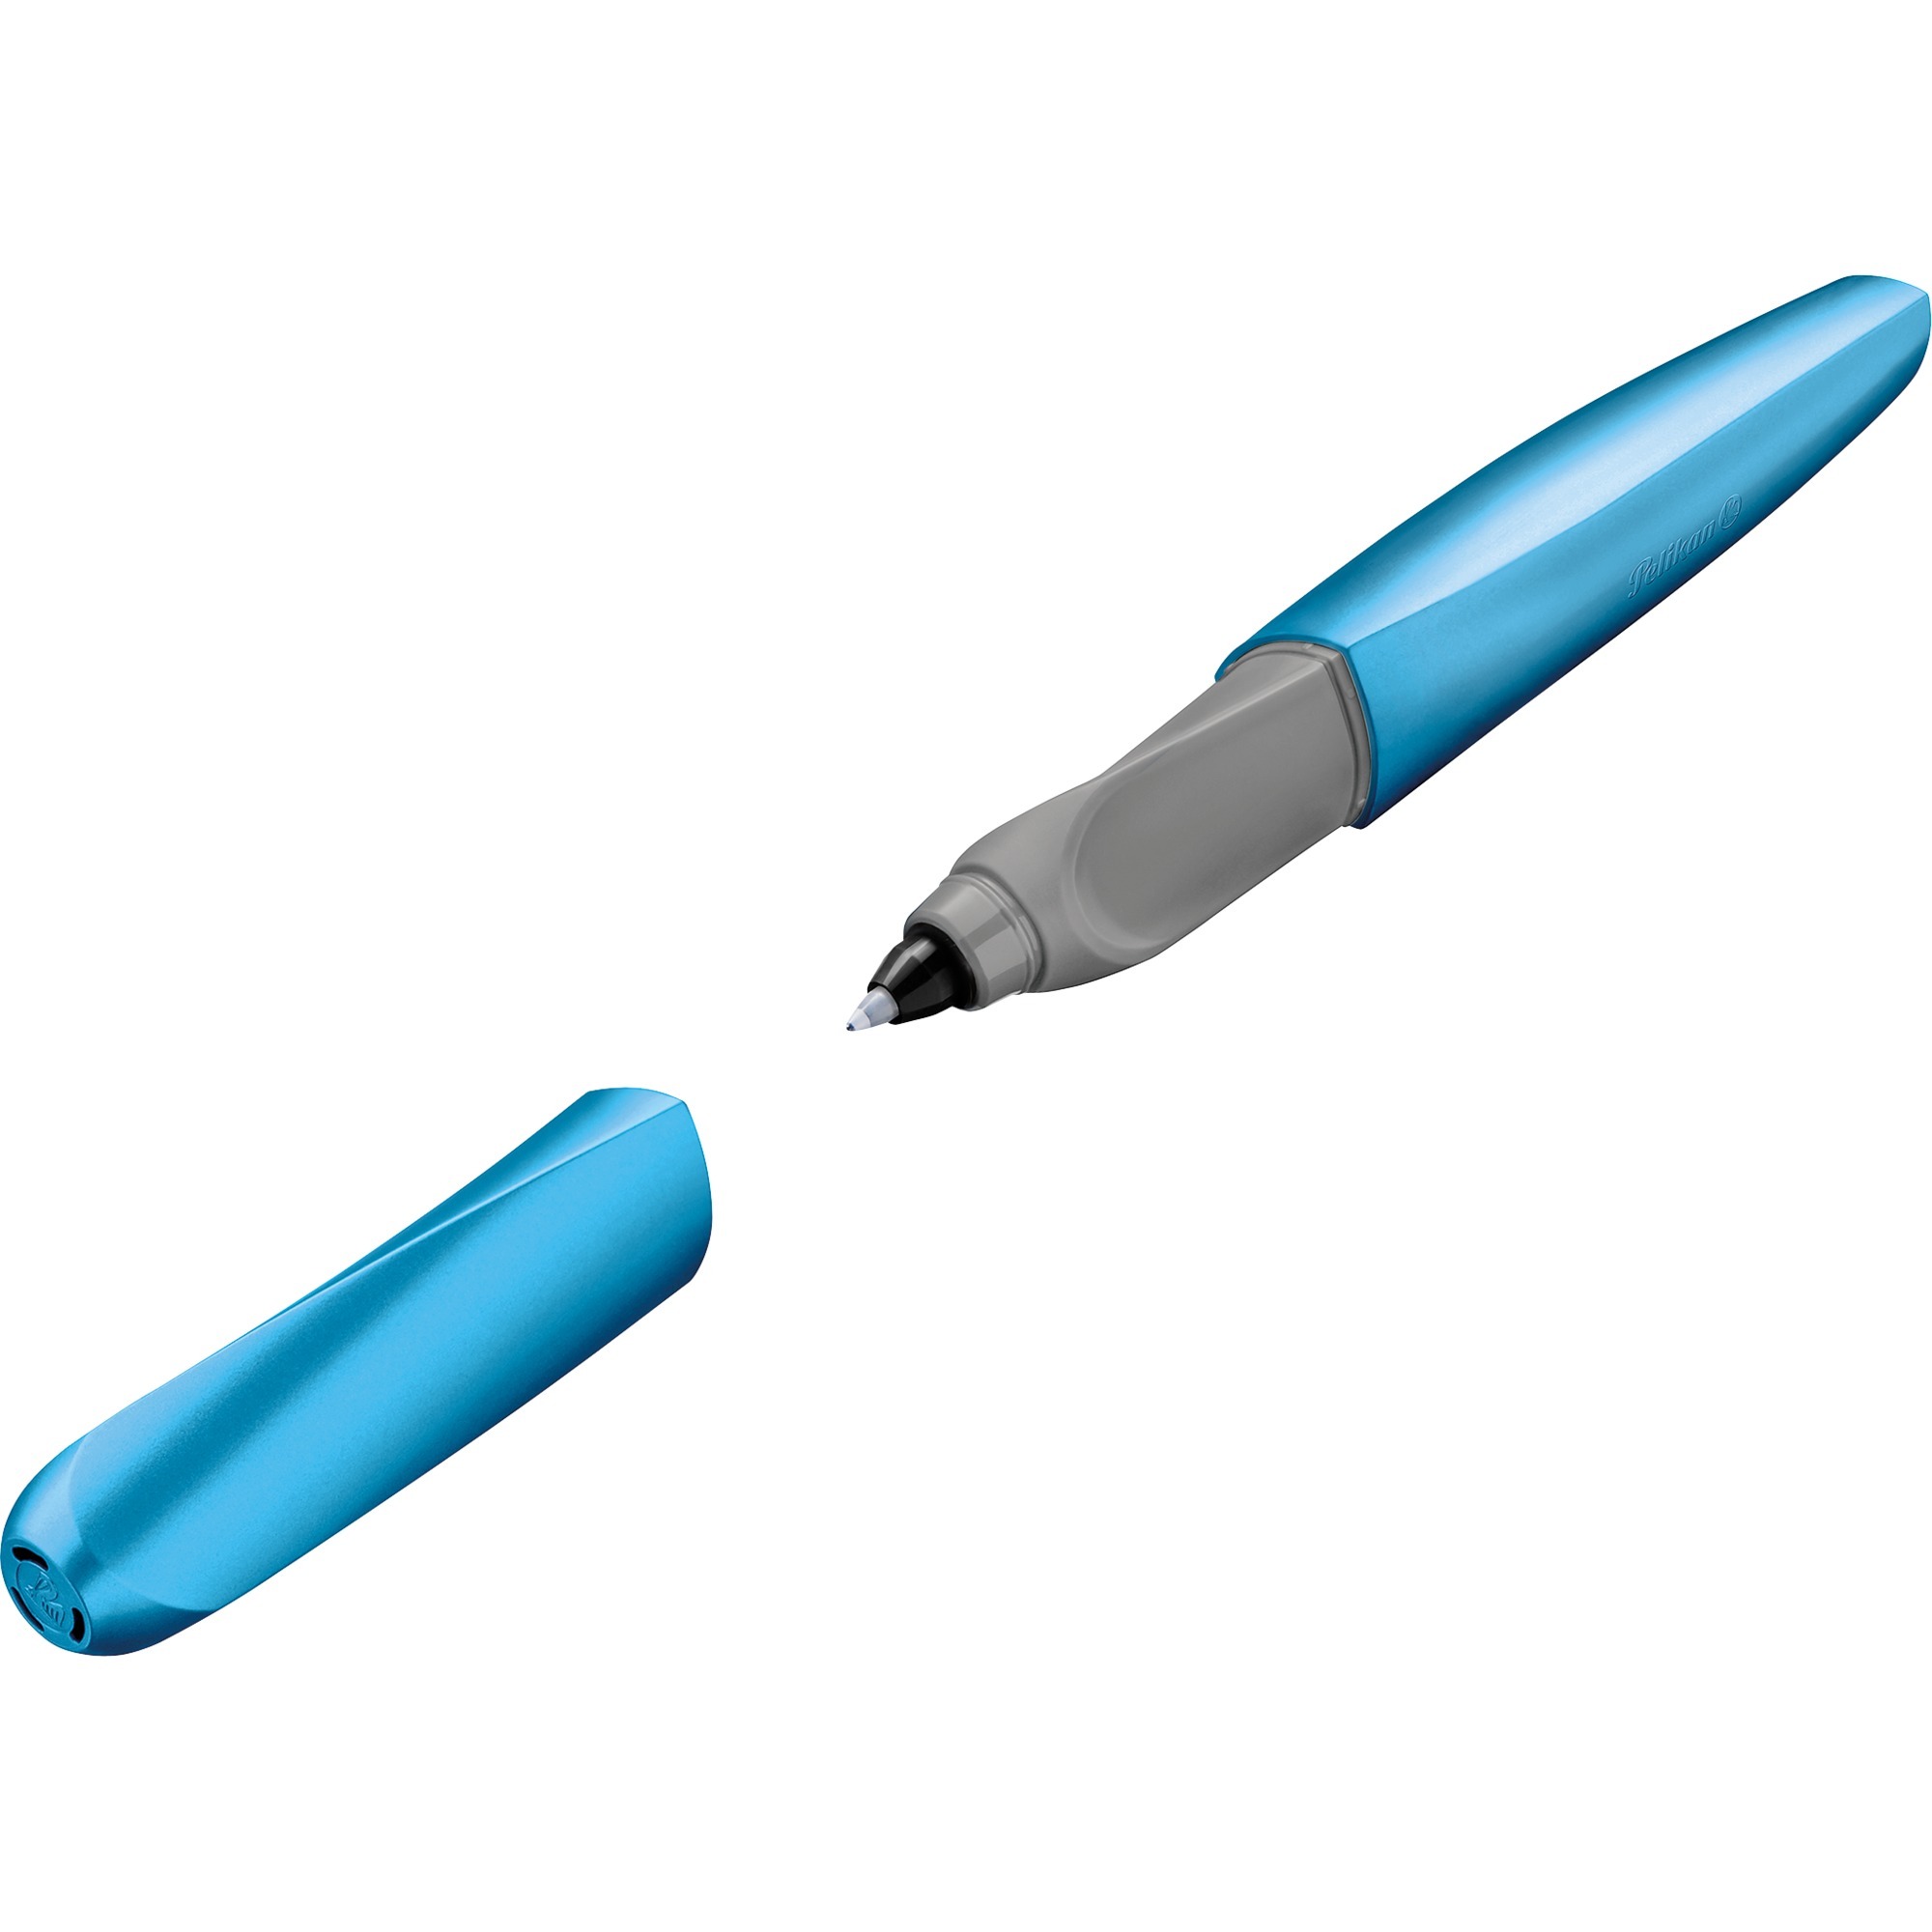 Image of Alternate - Tintenroller Twist Frosted blue, Stift online einkaufen bei Alternate